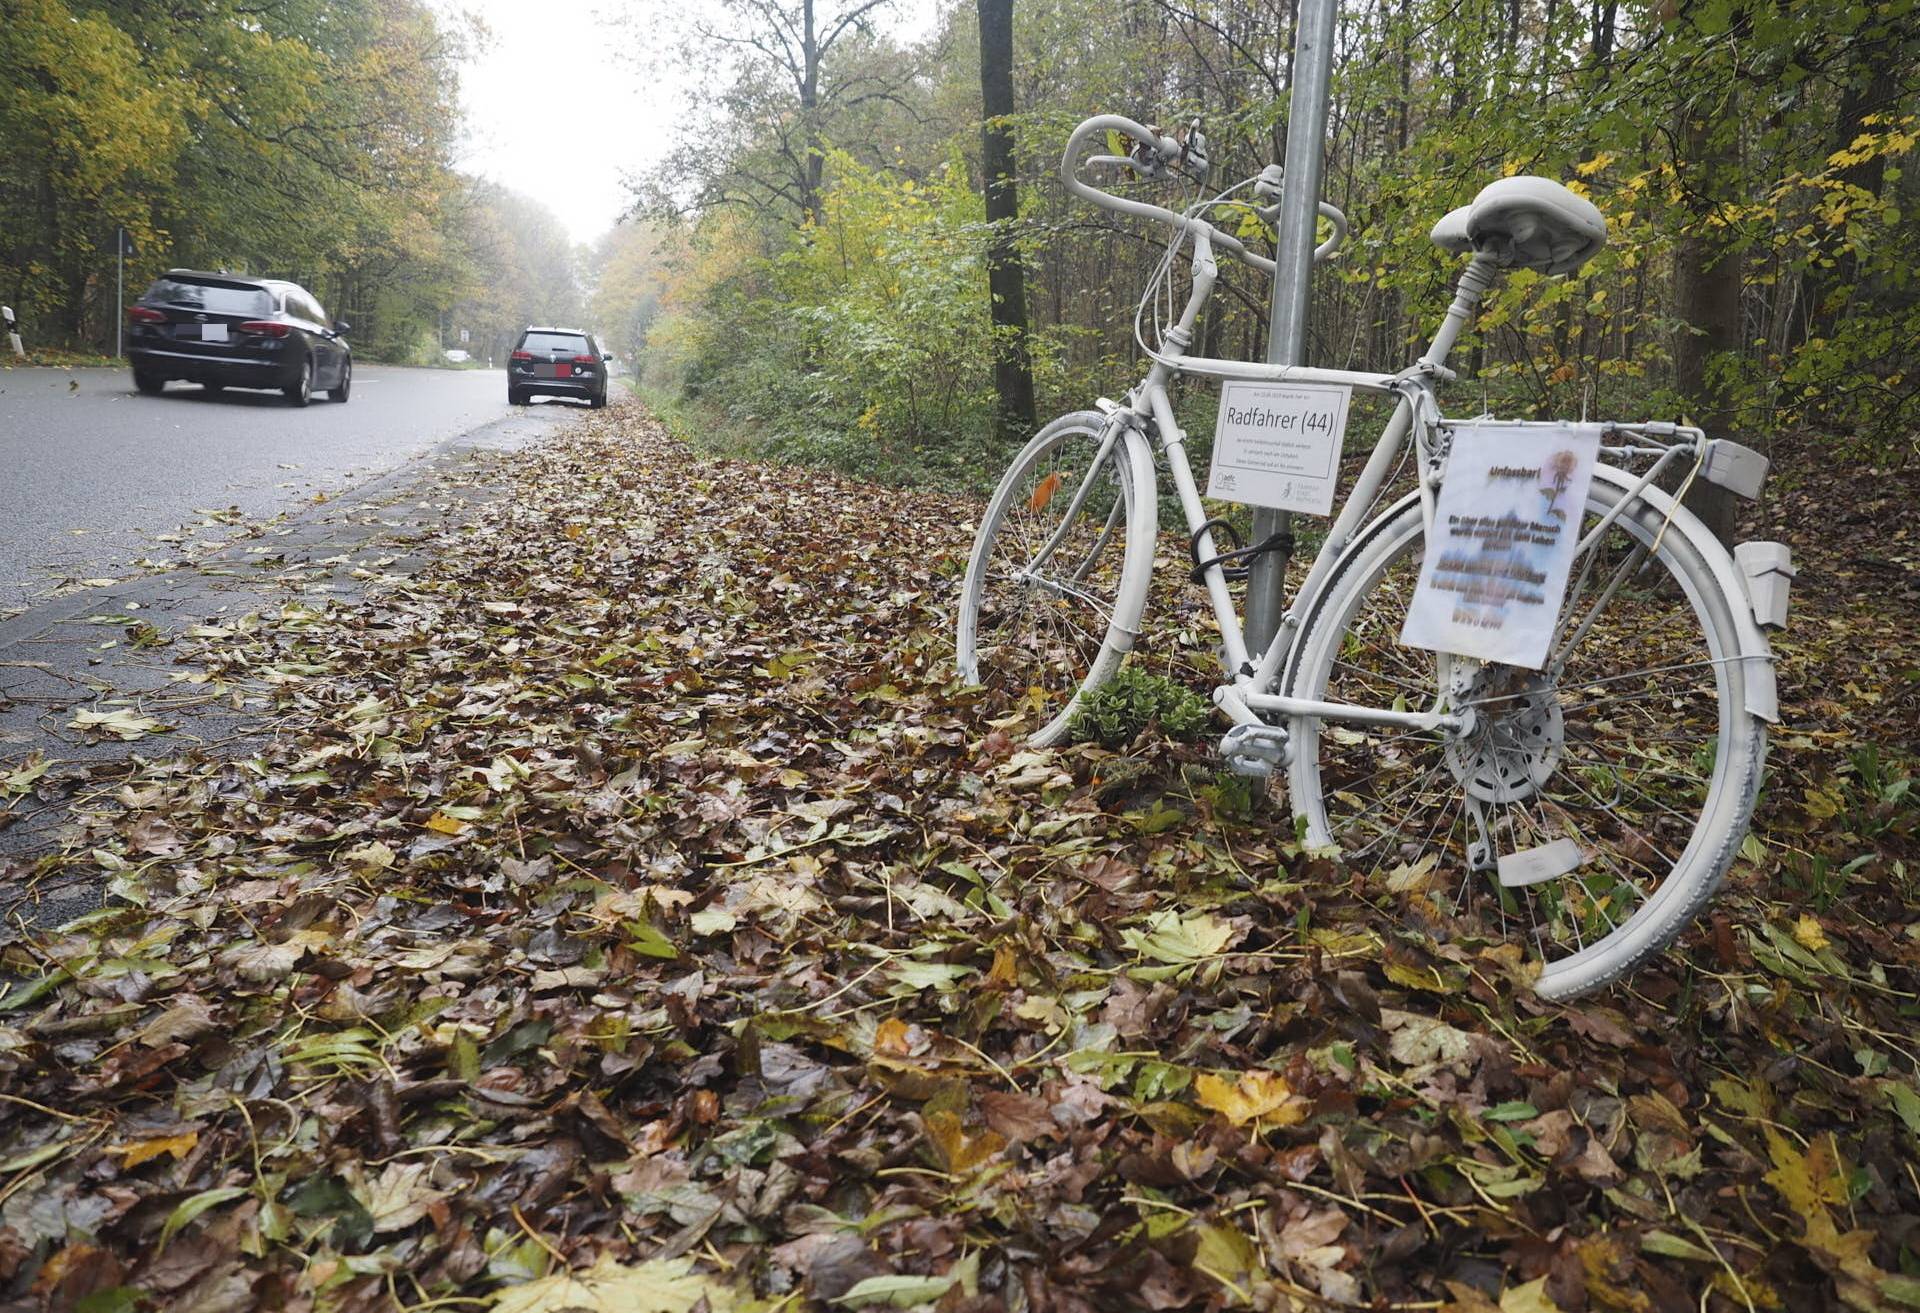  Ein weißes Rad erinnert auf der verkehrsreichen Straße an einen tödlich verunglückten Radfahrer. 